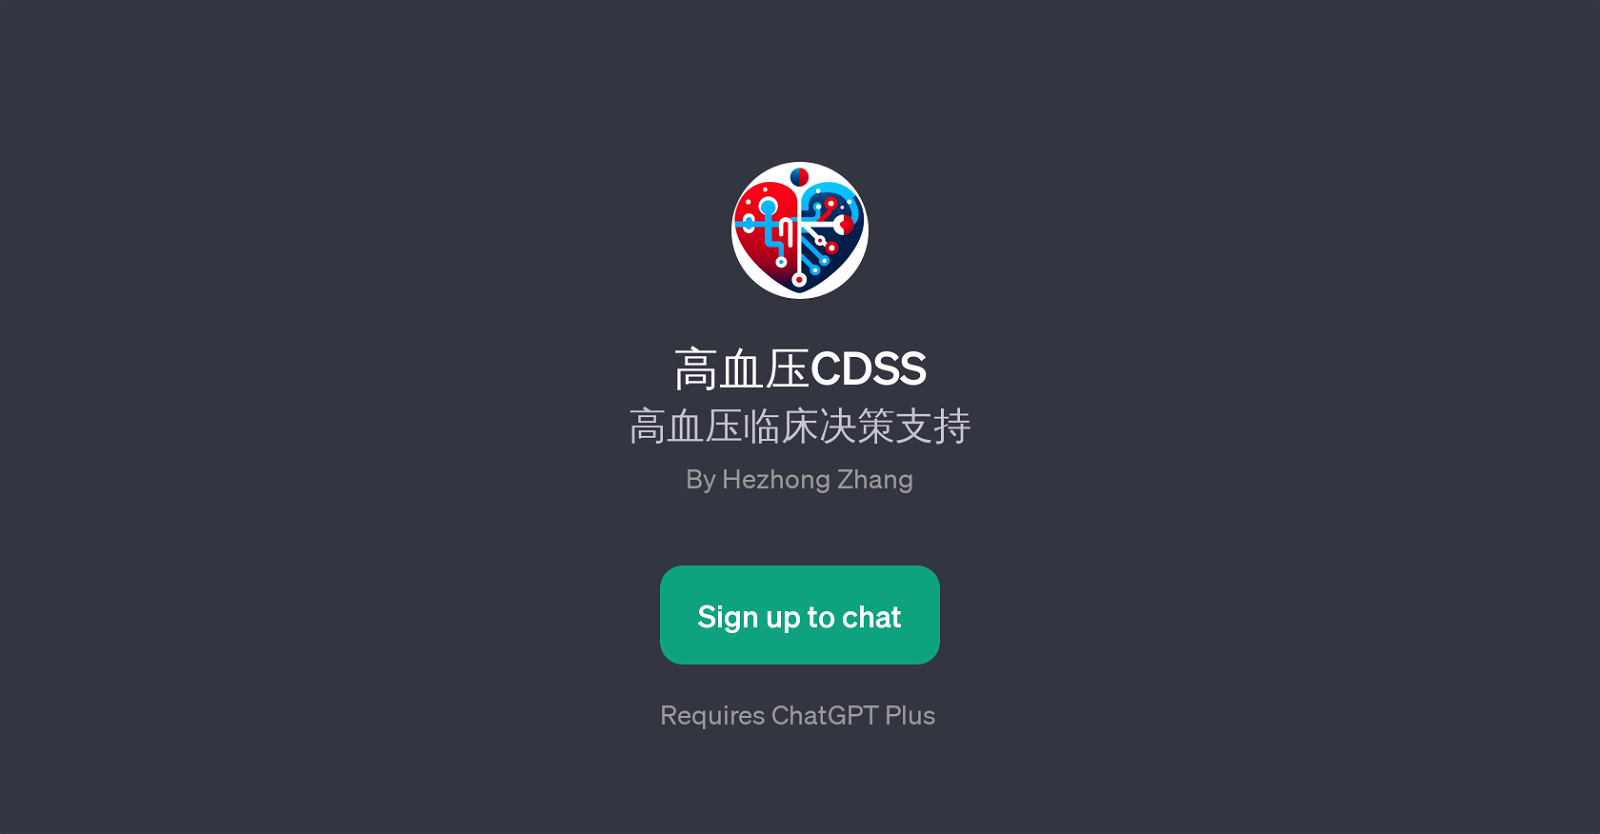 CDSS website